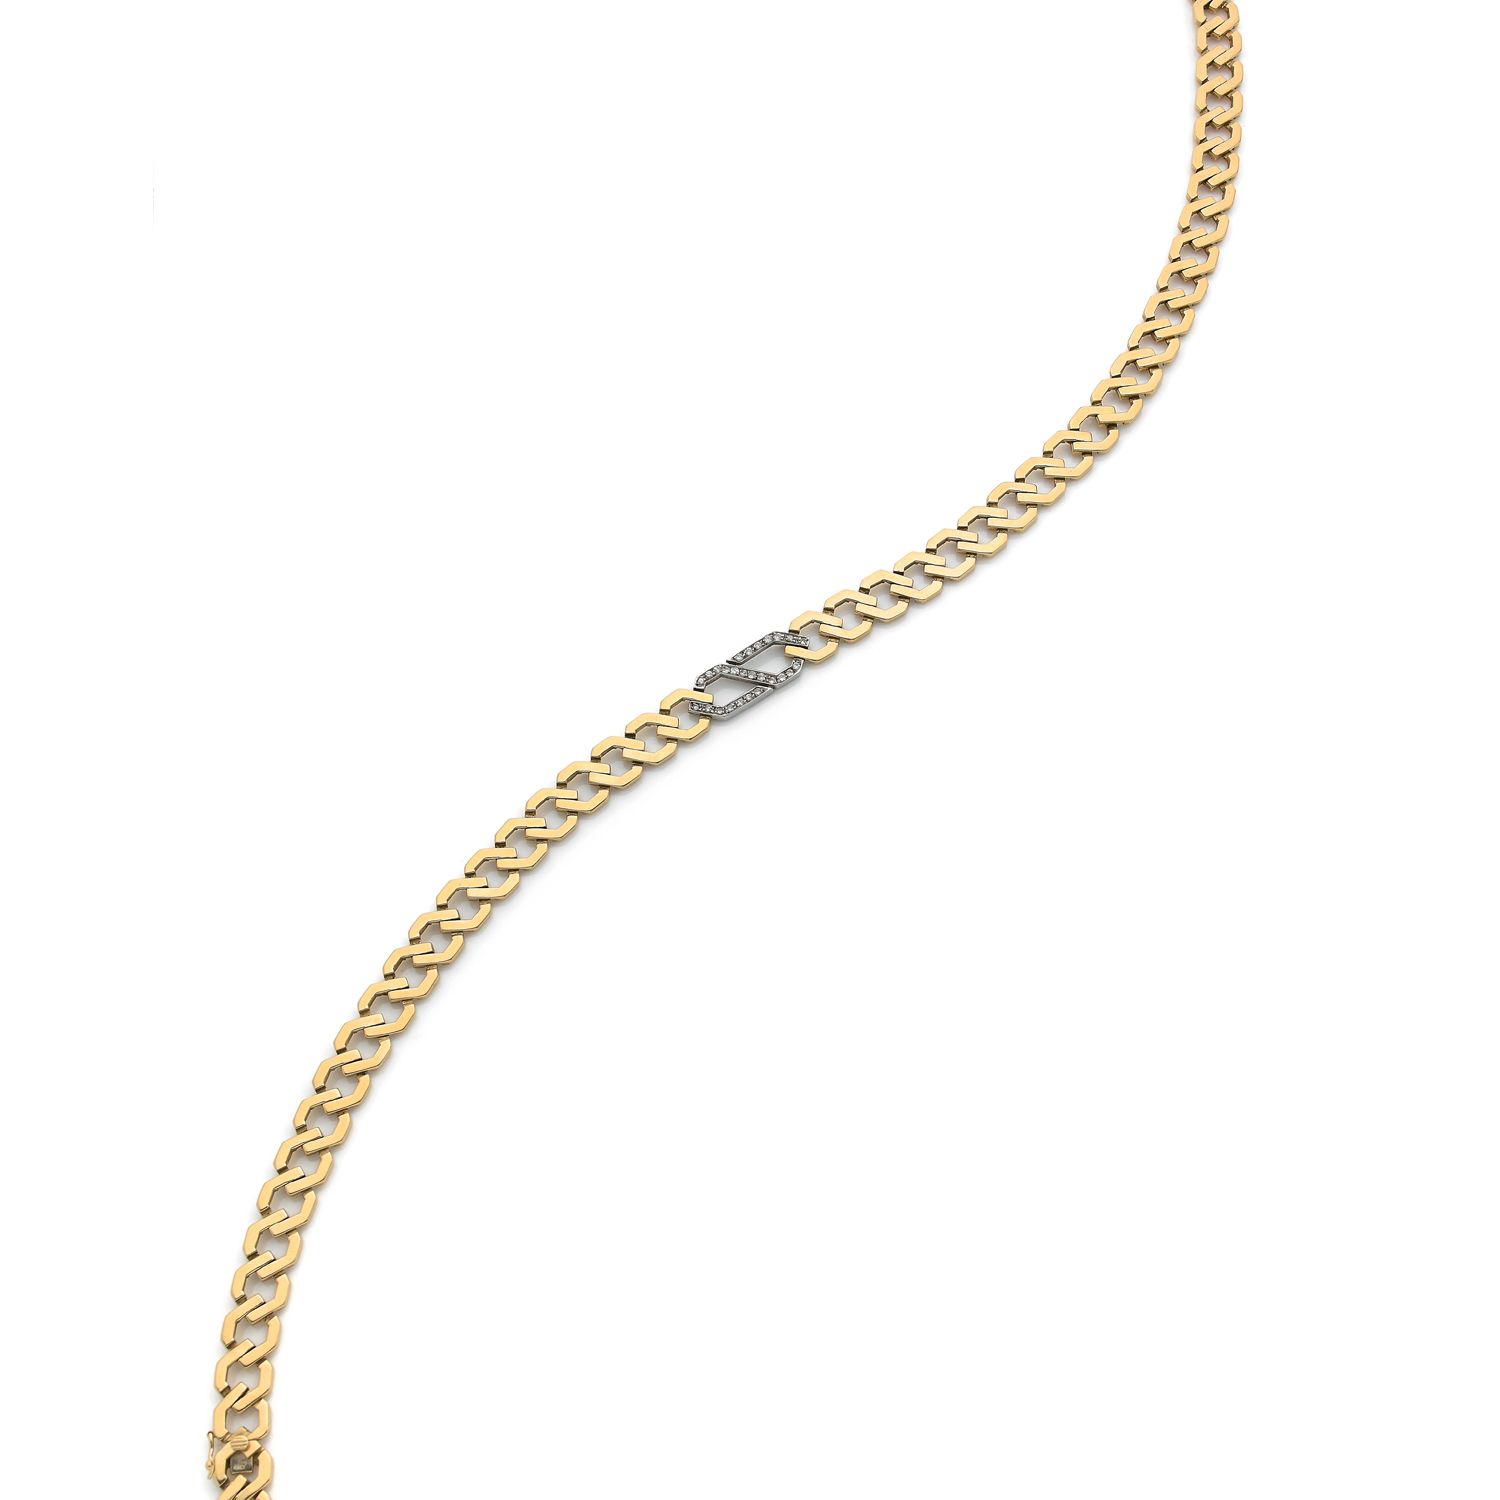 Null 18K（750‰）金双色扁形链环项链，六角形，中间装饰有钻石铺成的链环图案

意大利80年代的作品

总长度（两种可能的长度）：41厘米

毛重：63&hellip;